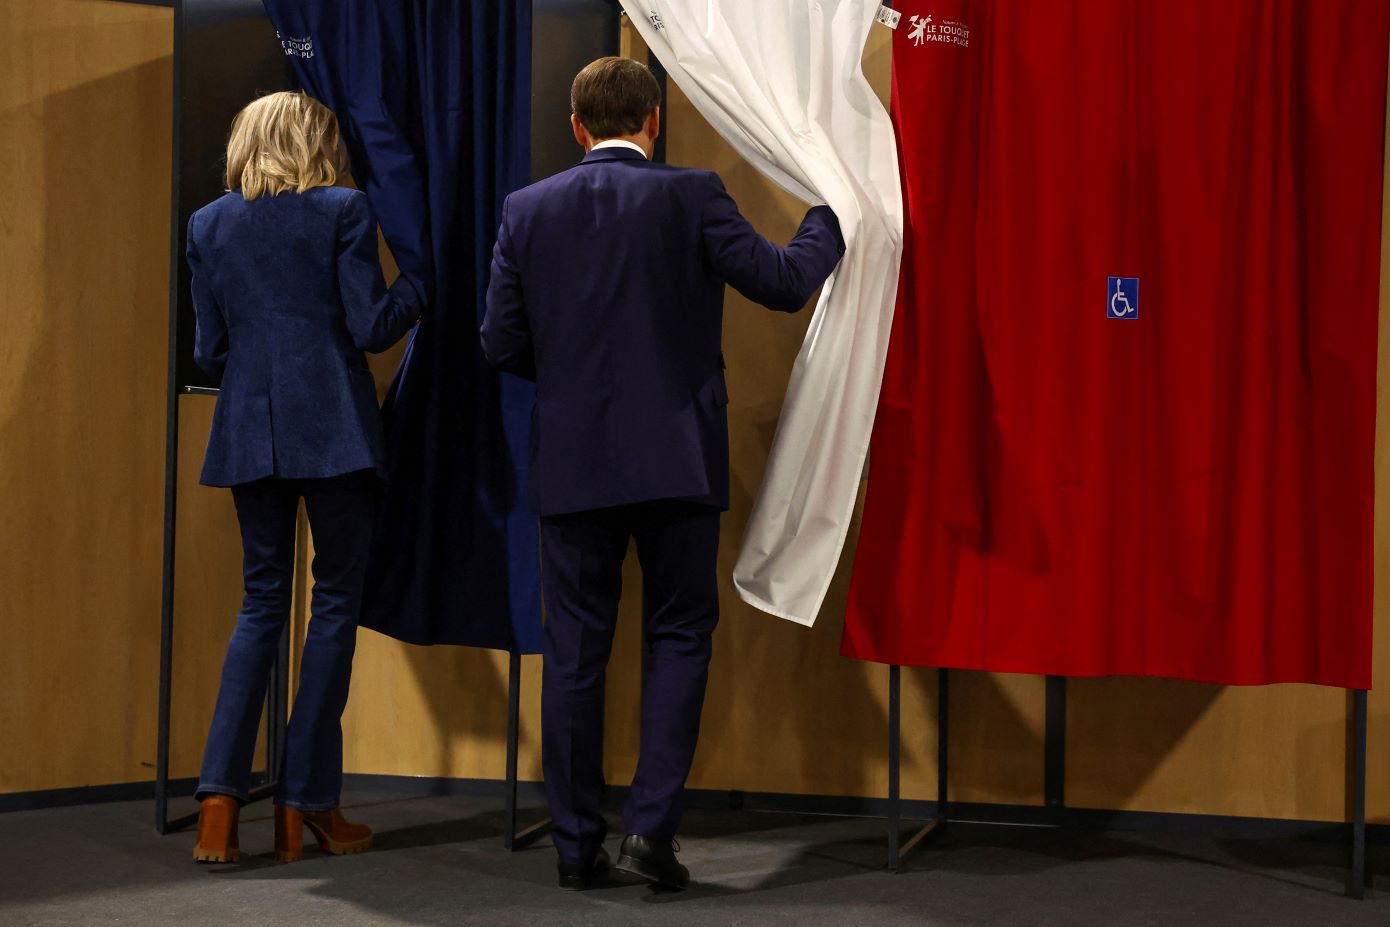 Εκλογές στη Γαλλία: Και δεύτερη δημοσκόπηση δείχνει την ακροδεξιά να μην συγκεντρώνει την απόλυτη πλειοψηφία